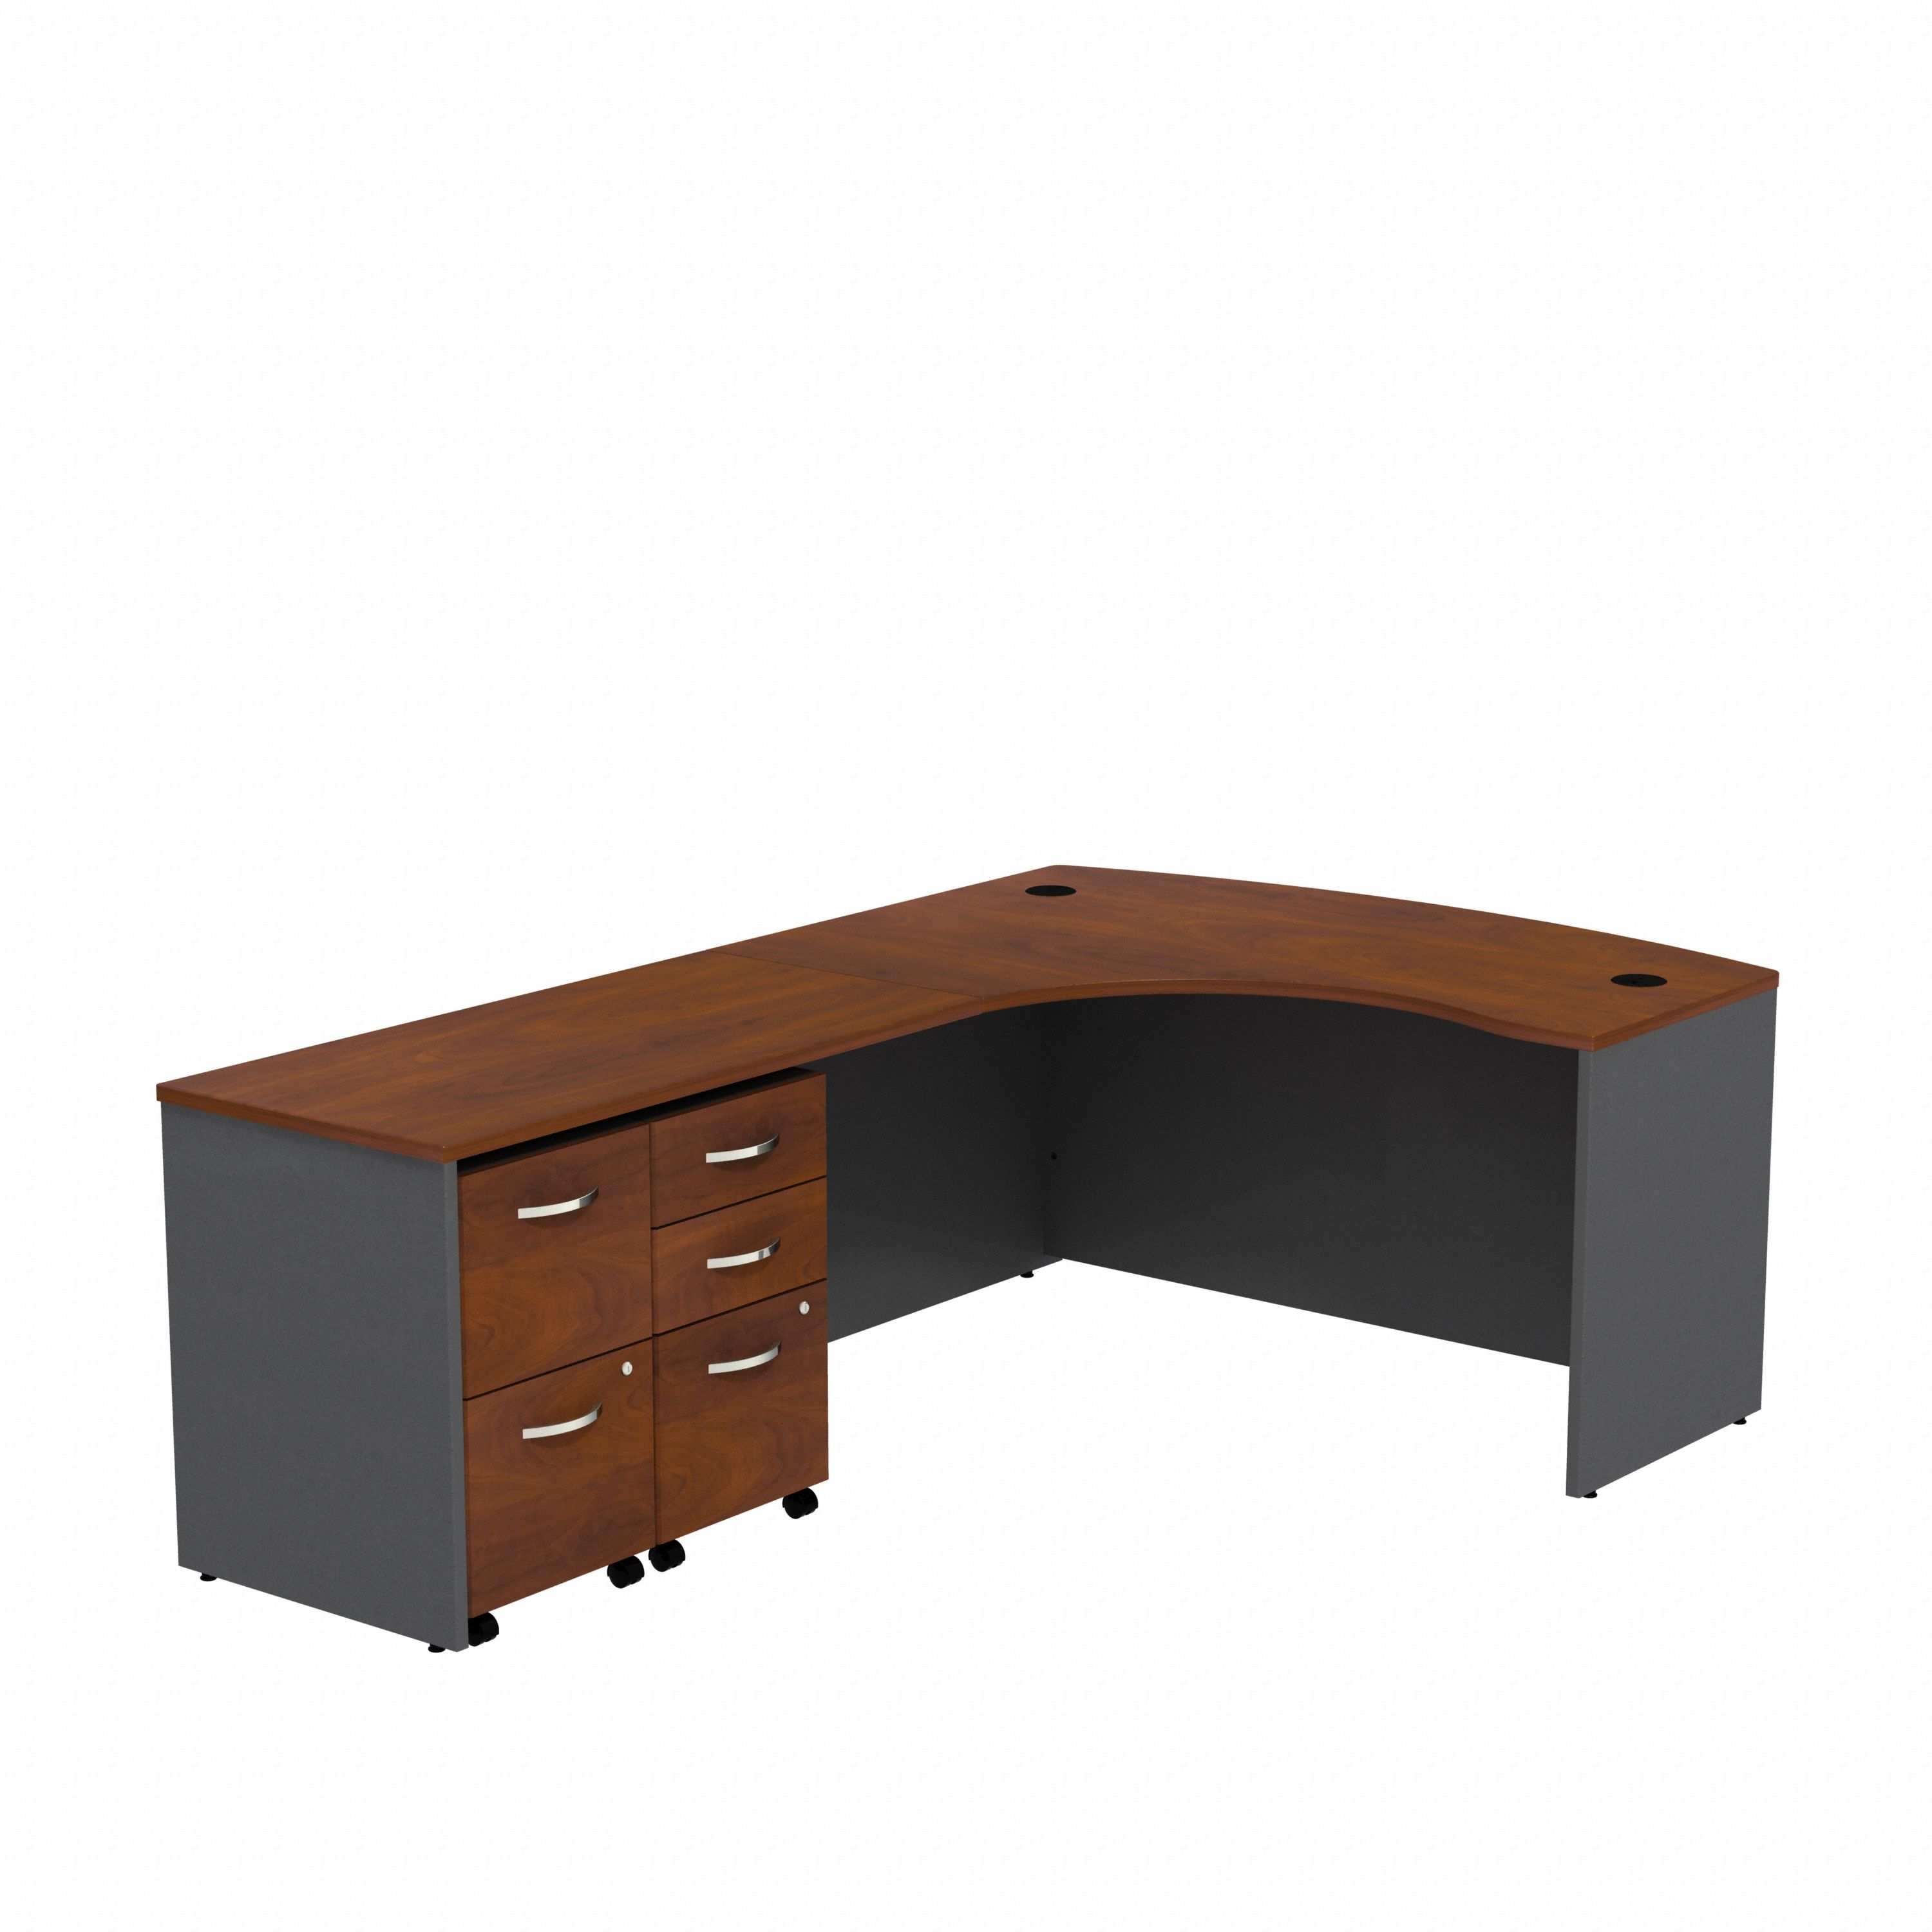 Shop Bush Business Furniture Series C Bow Front Left Handed L Shaped Desk with 2 Mobile Pedestals 02 SRC034HCLSU #color_hansen cherry